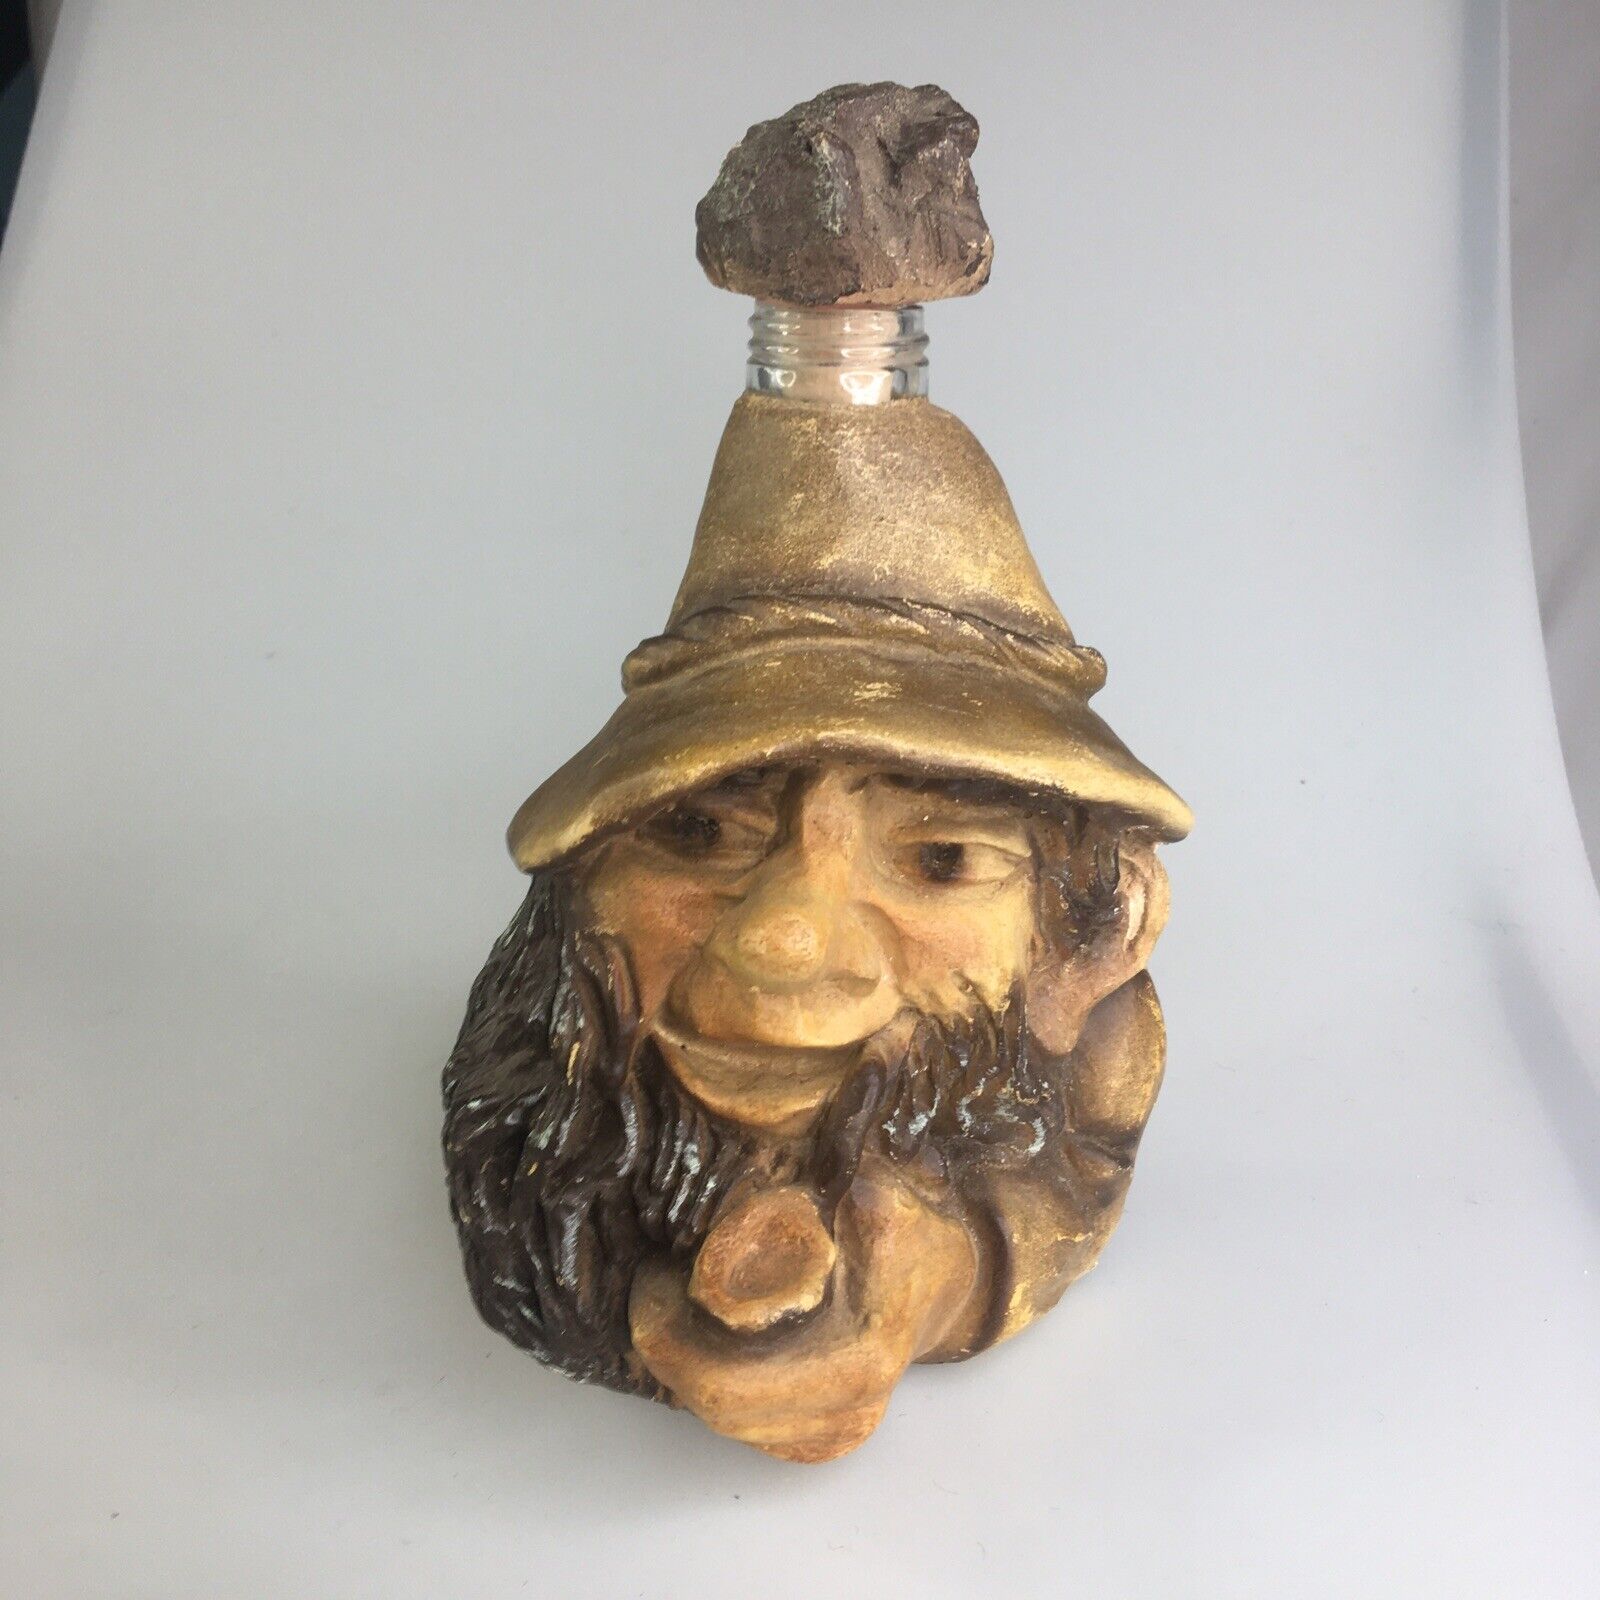 VTG Whiskey Bottle Resin Gnome with Pipe Decanter Whimsical + Cork Stopper